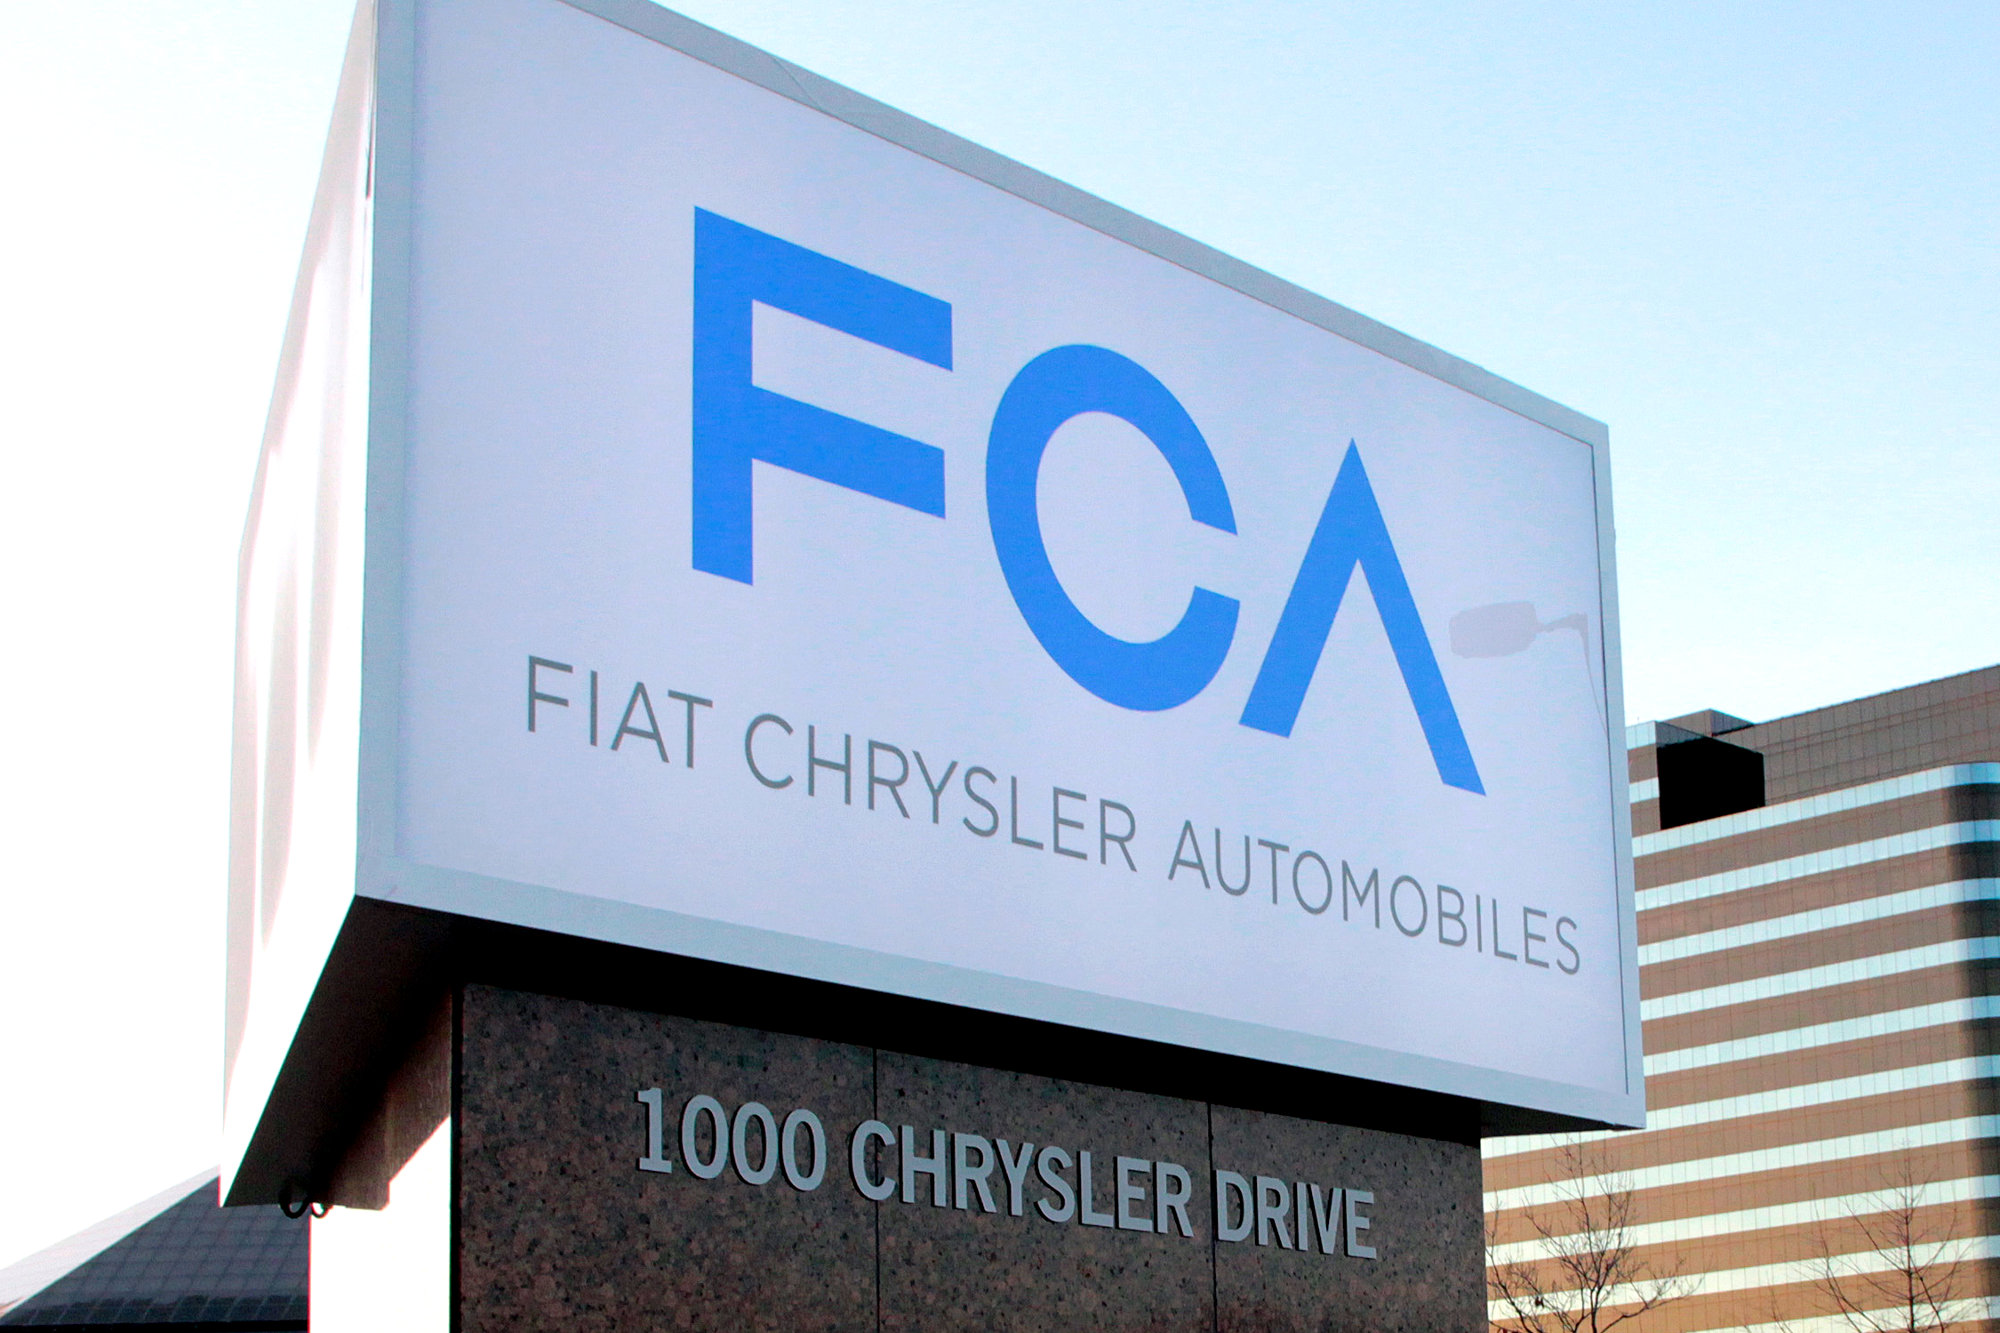 Chrysler Fiat's new FCAing sign, yesterday